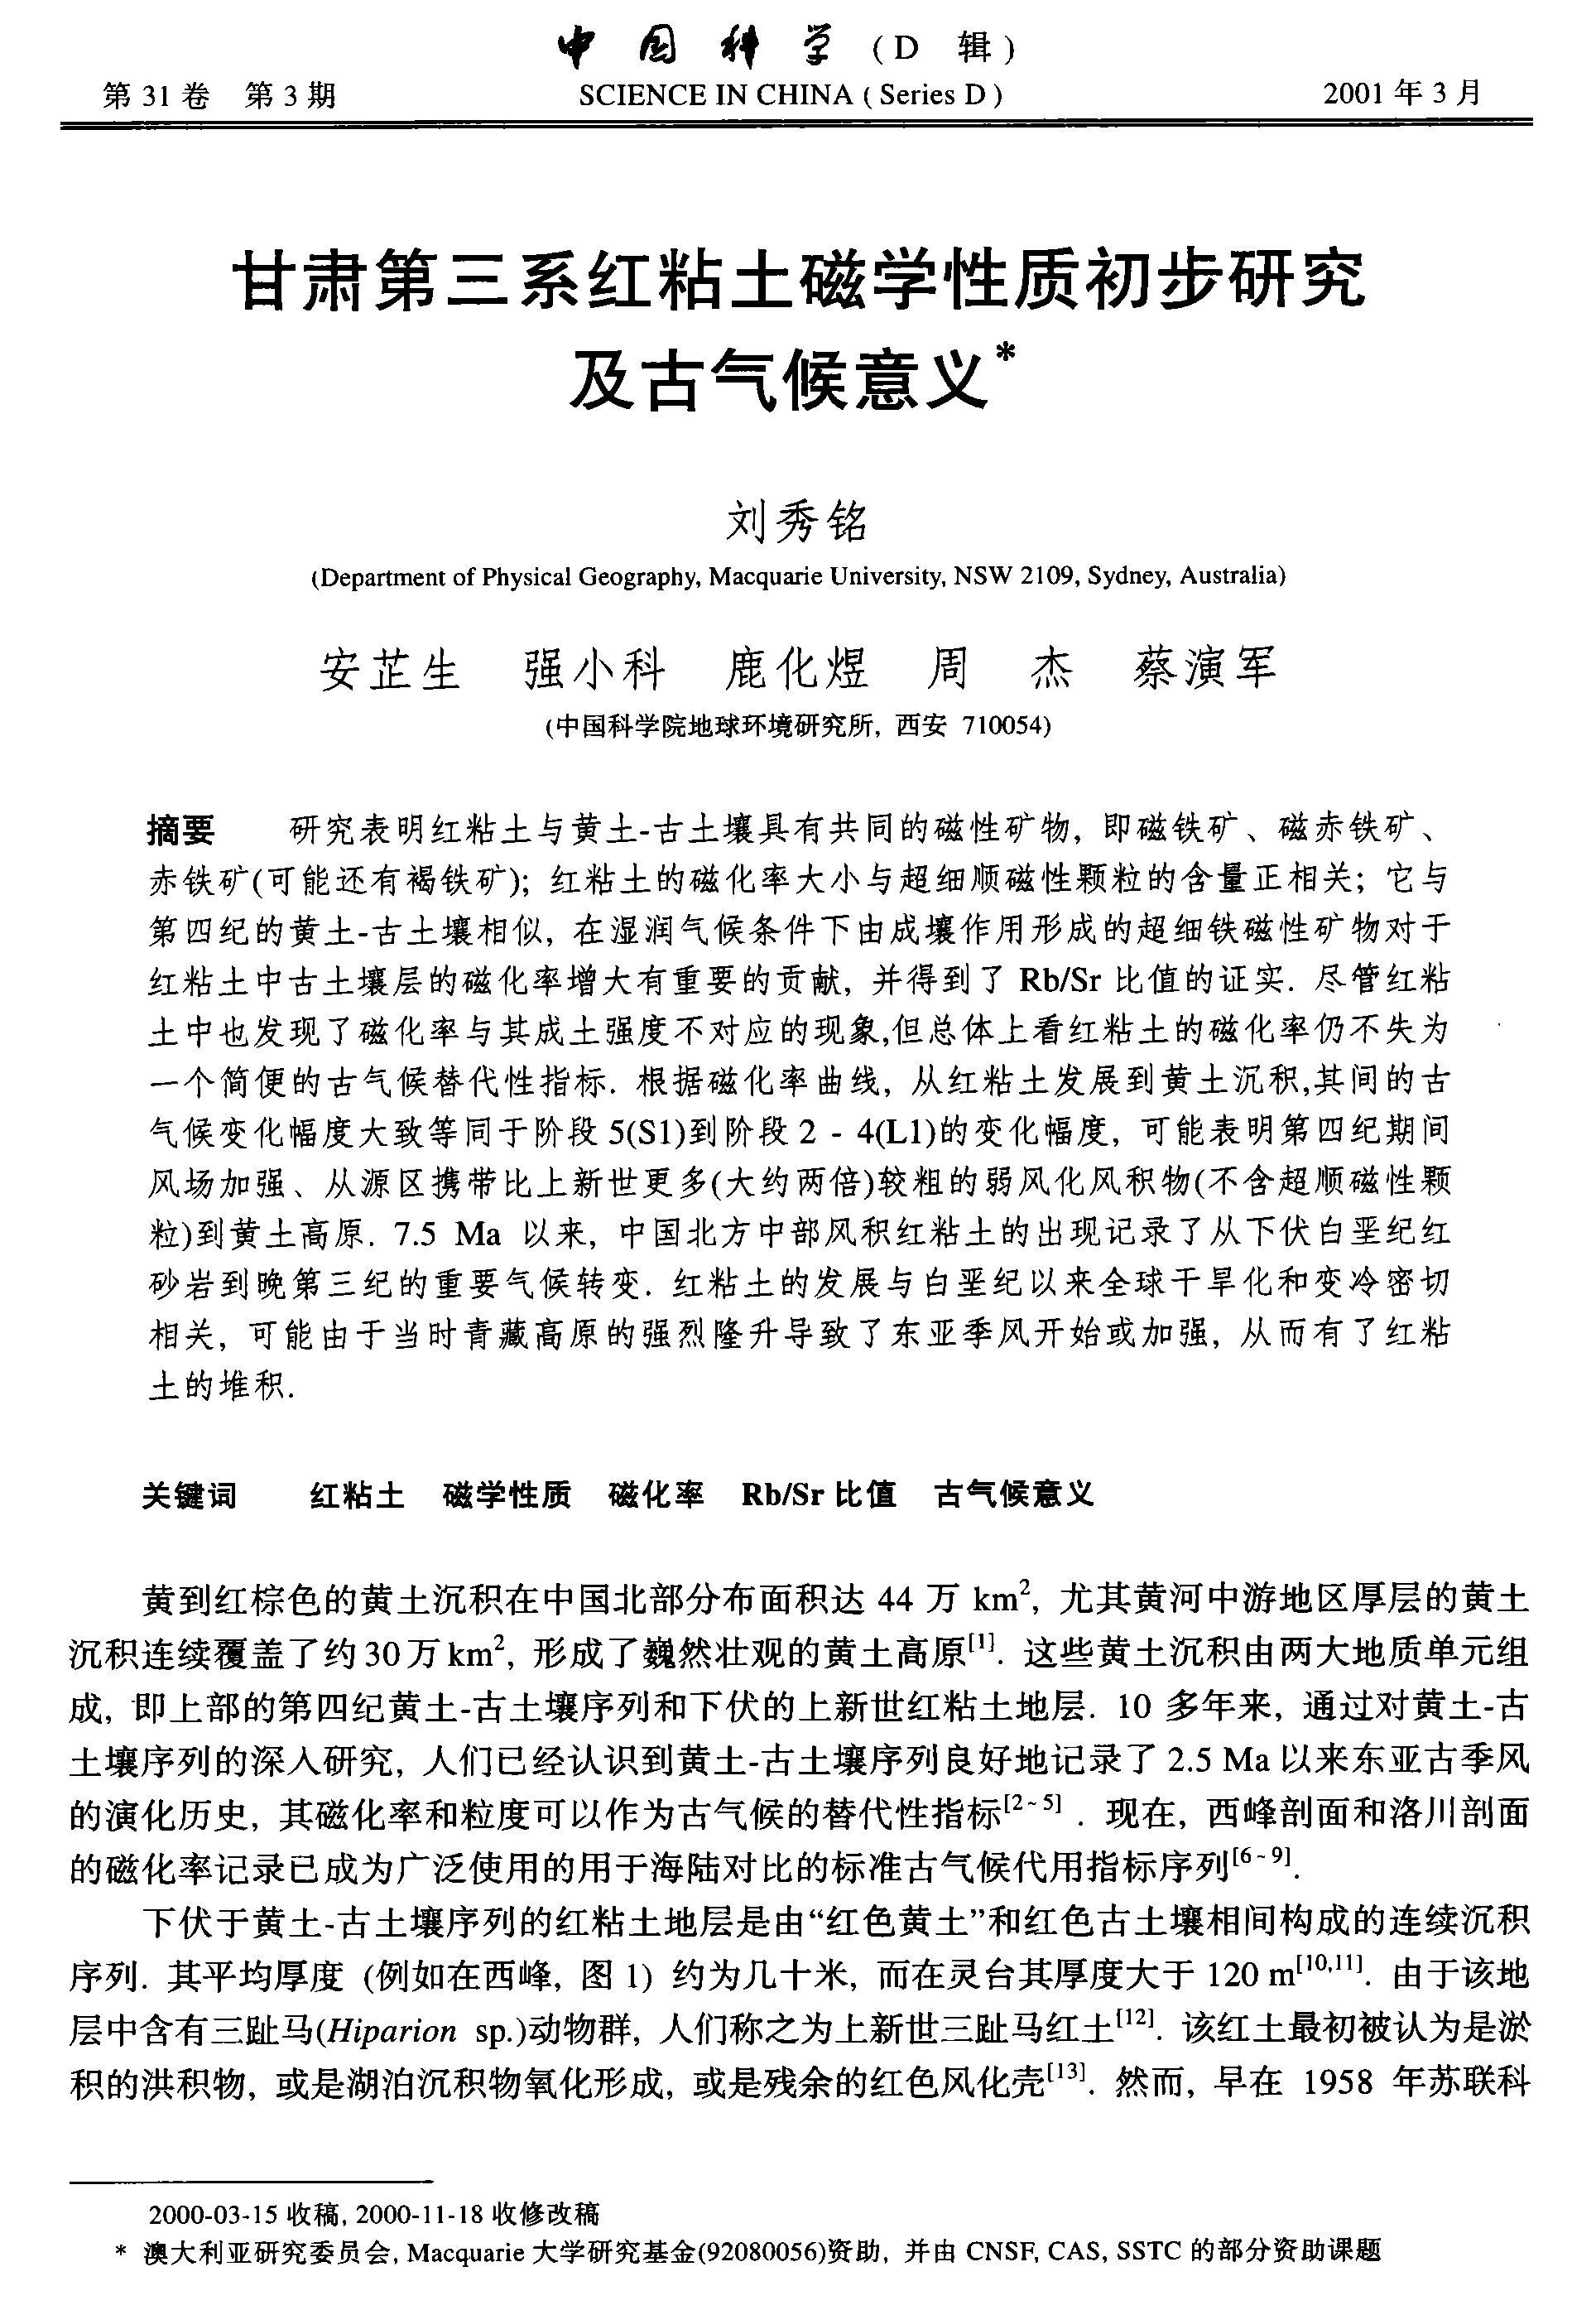 2001 中国科学D - 甘肃第三系红粘土磁学性质初步研究及古气候意义